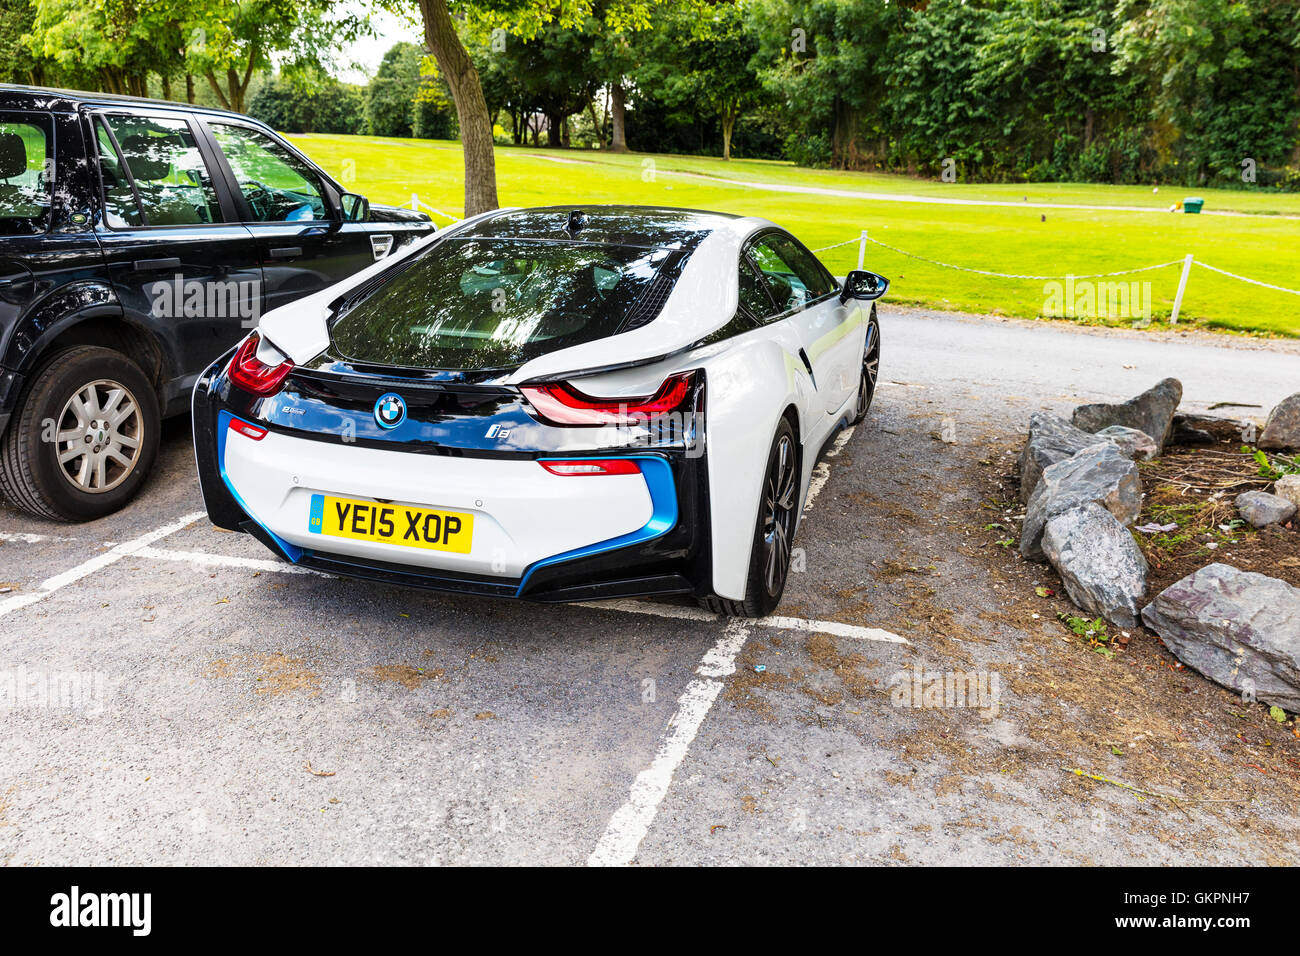 BMW i8 Sportwagen-Plug-in Hybrid-Sportwagen von BMW Fahrzeug entwickelte geparkt Supersportwagen elektrische Kraftstoff Wirtschaft Konzept Vision UK Stockfoto